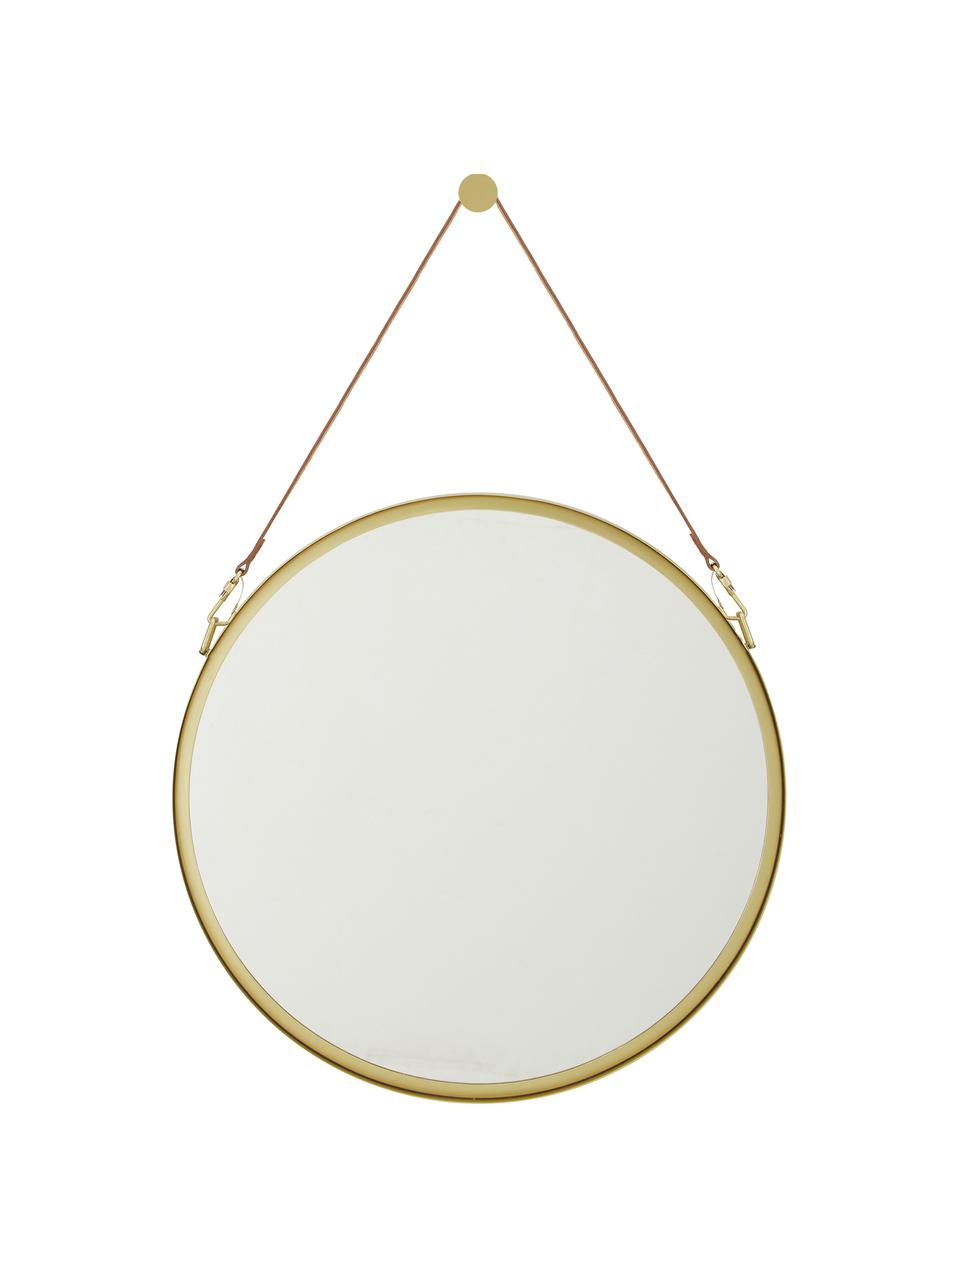 Runder Wandspiegel Liz mit brauner Lederschlaufe, Spiegelfläche: Spiegelglas, Rückseite: Mitteldichte Holzfaserpla, Gold, Ø 40 cm